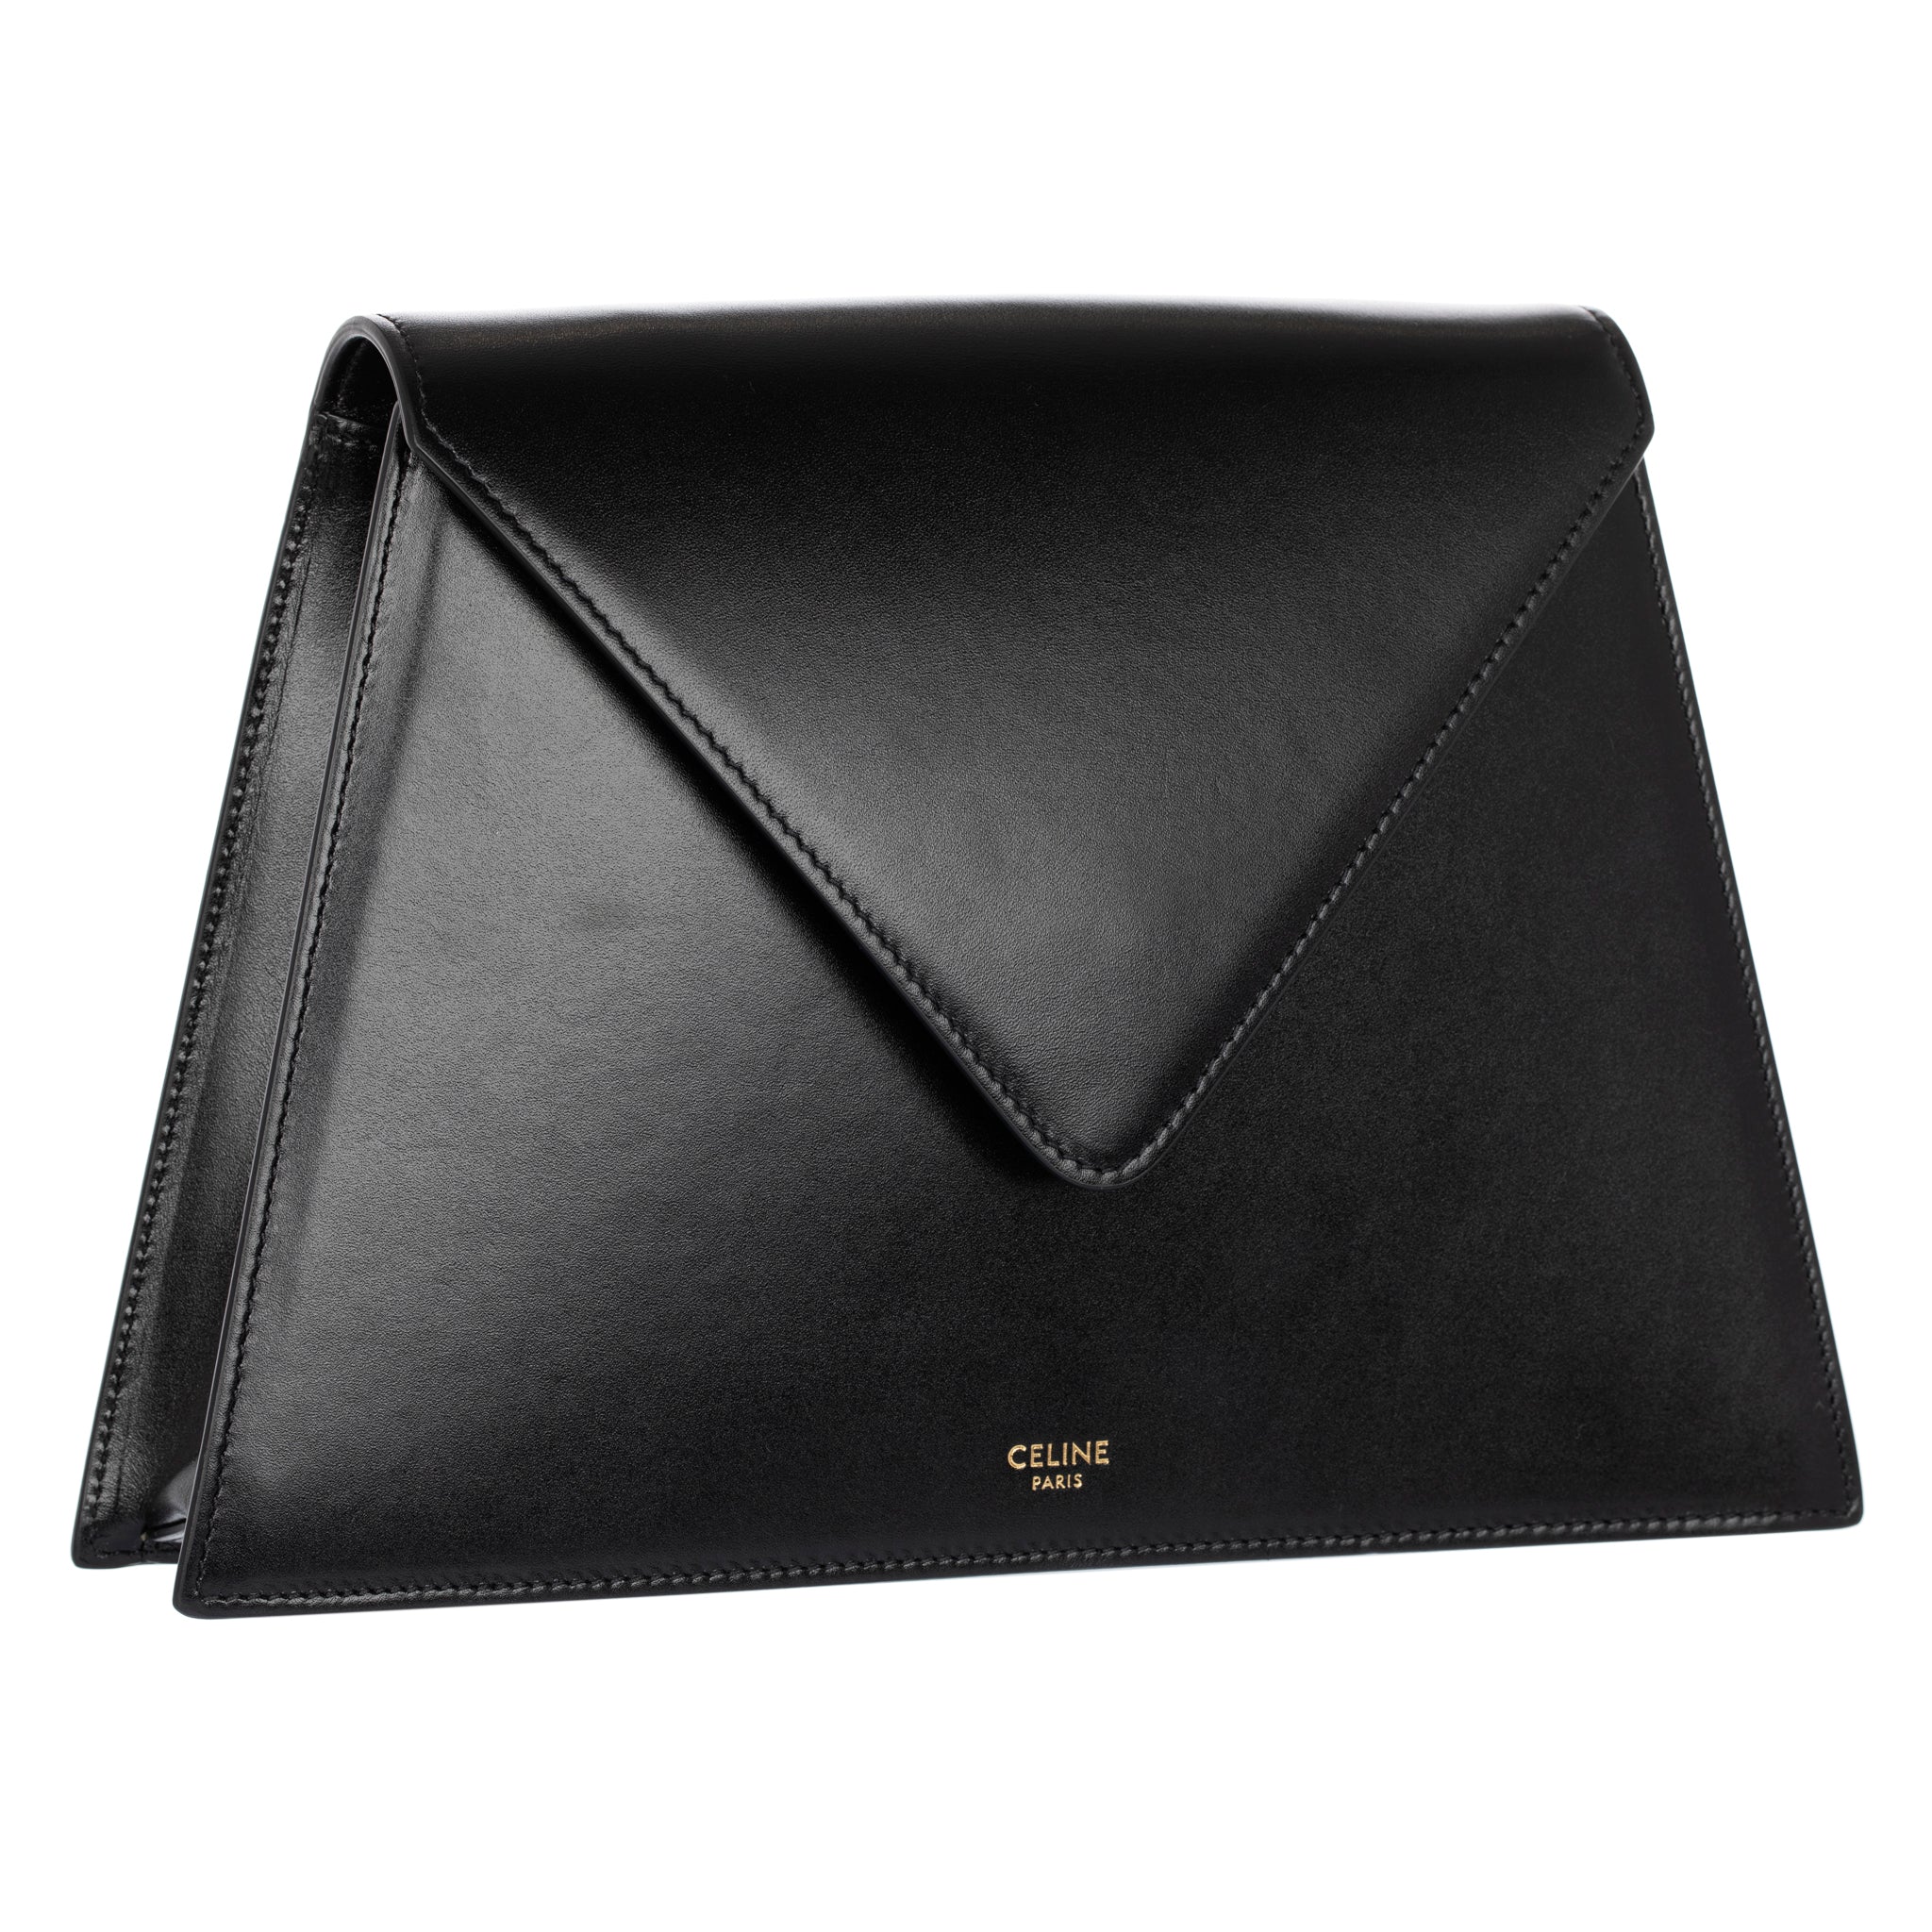 Celine Triangle Envelope Clutch/Bag Black Smooth Leather